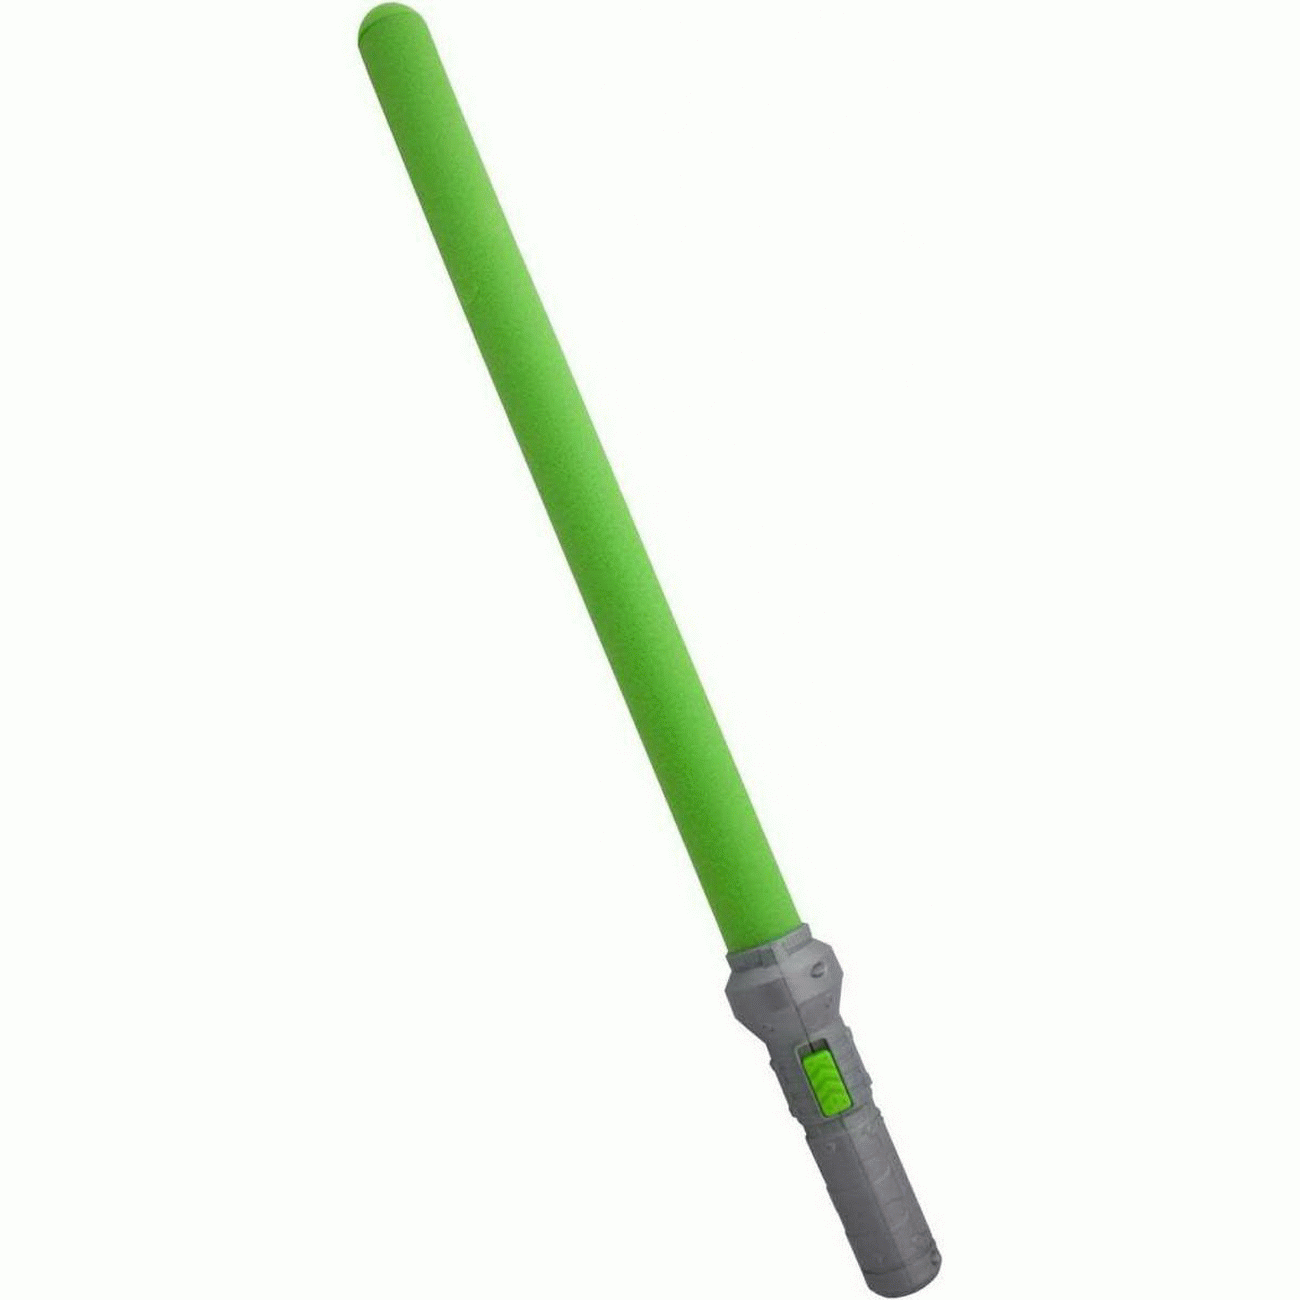 X-Shot Lichtschwert mit Beleuchtung - grün mit grauem Griff (Zuru 10012793)